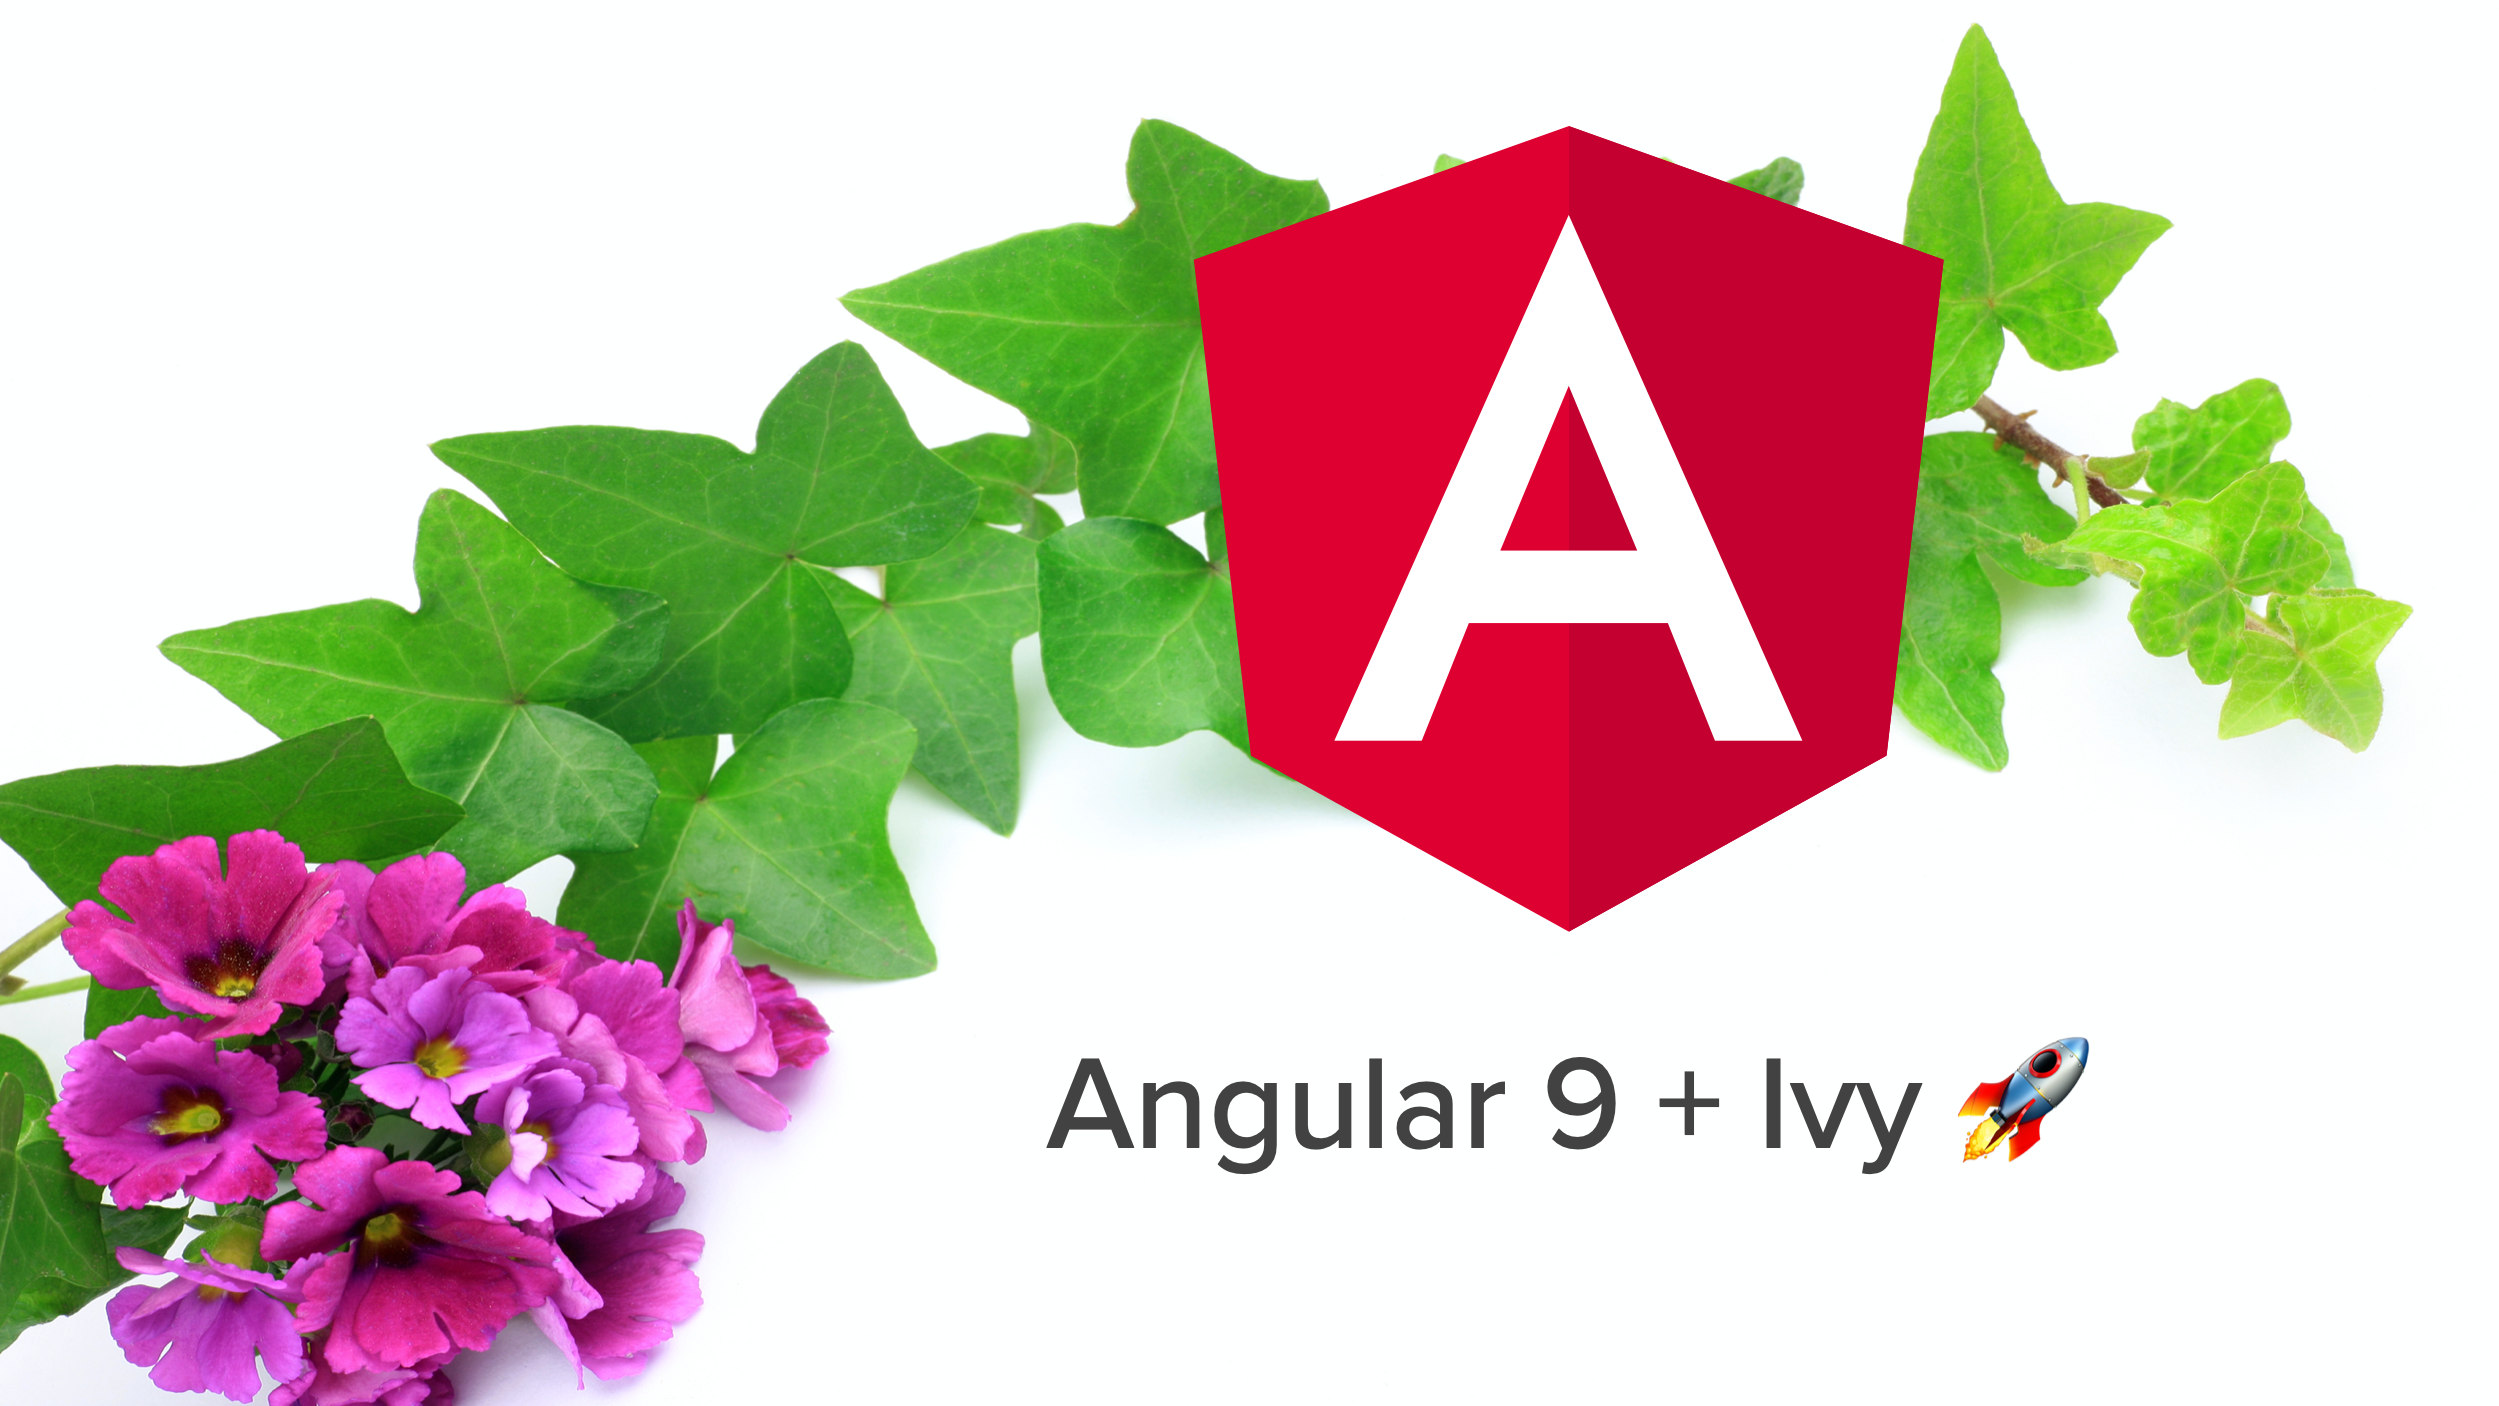 Angular 9 + Ivy FTW!